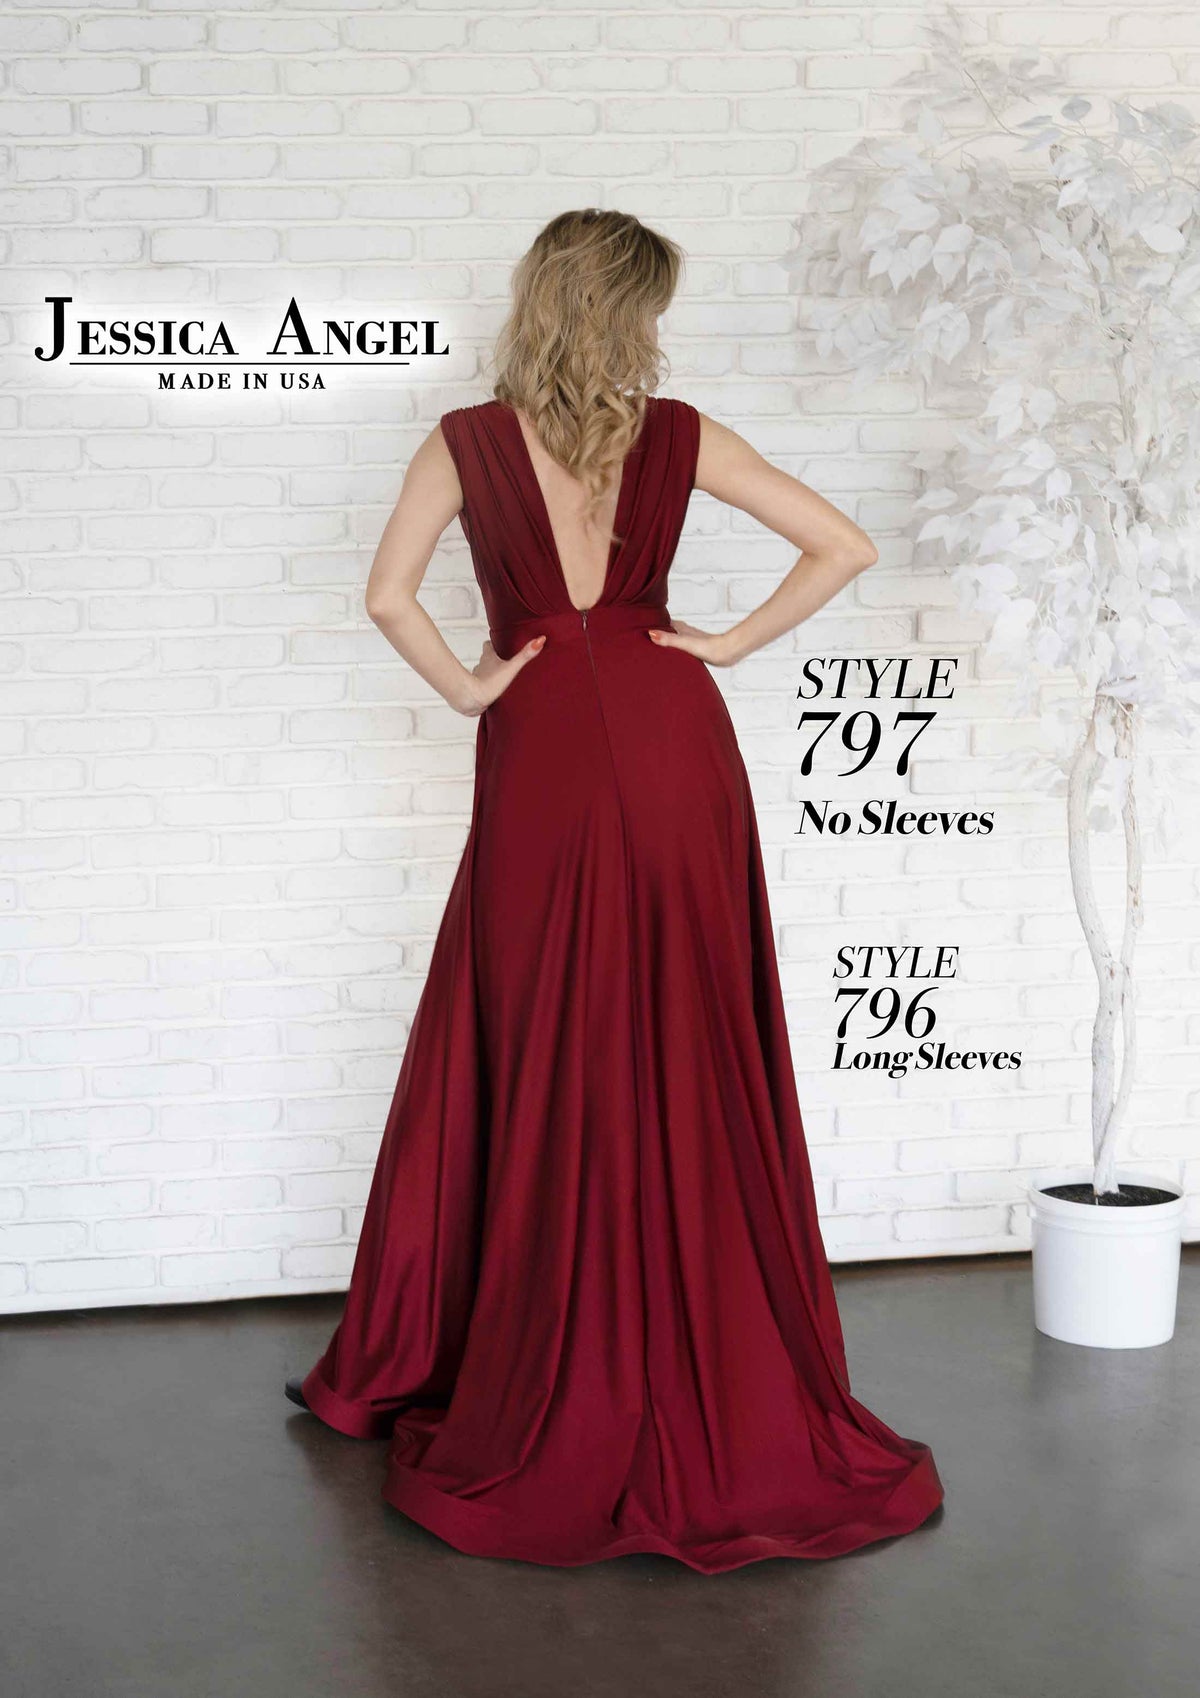 Jessica Angel 797